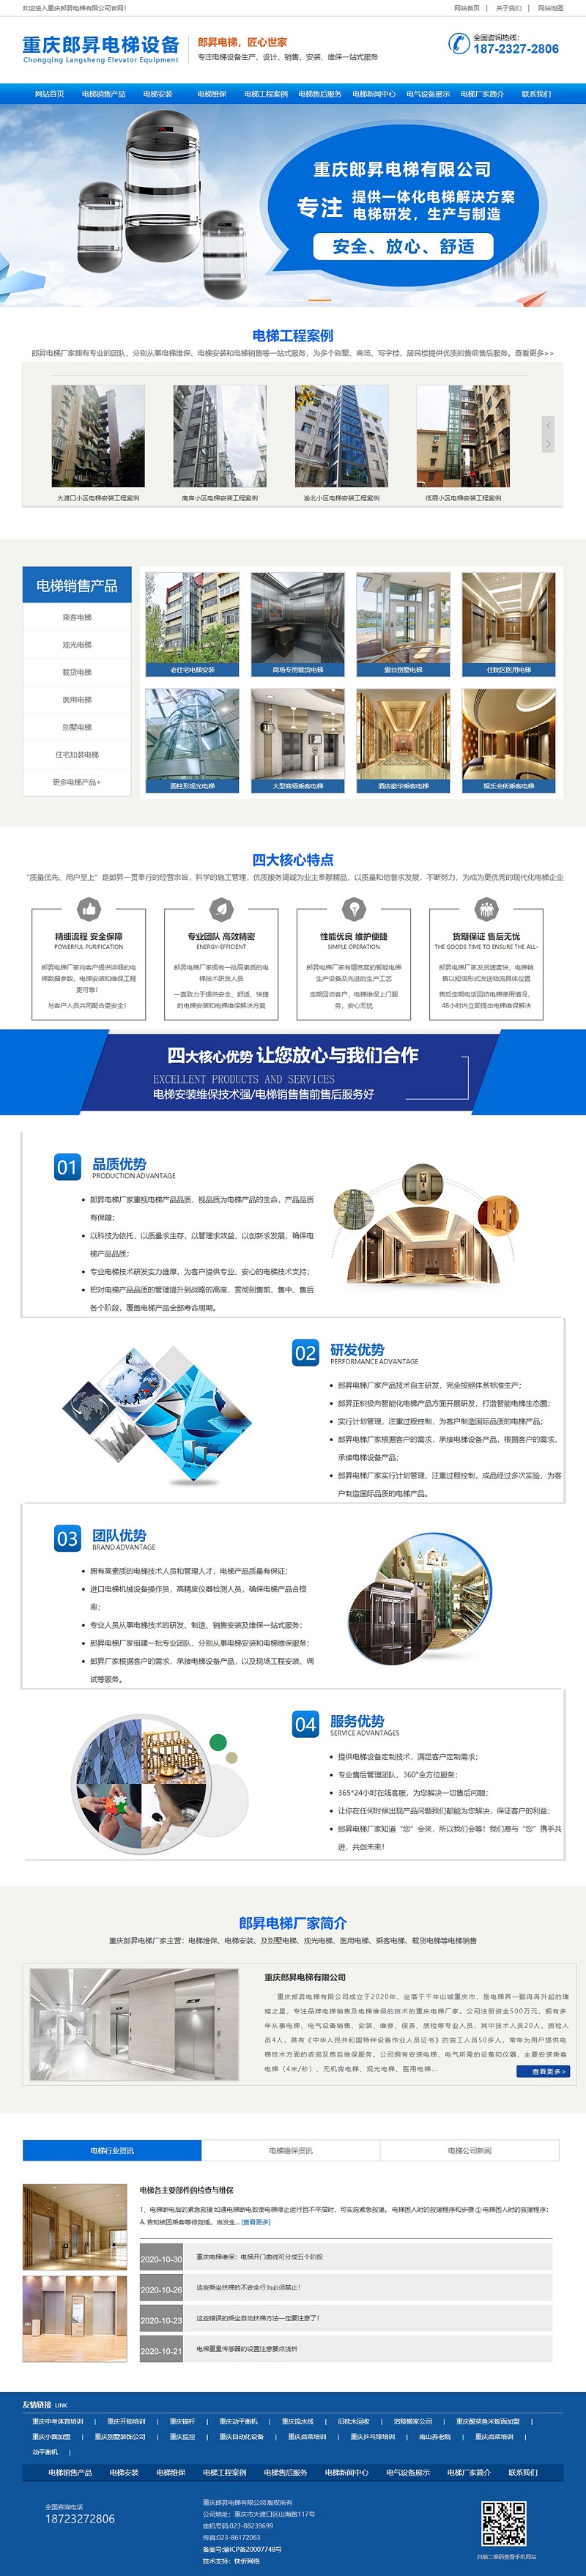 重庆郎昇电梯有限公司网站建设案例